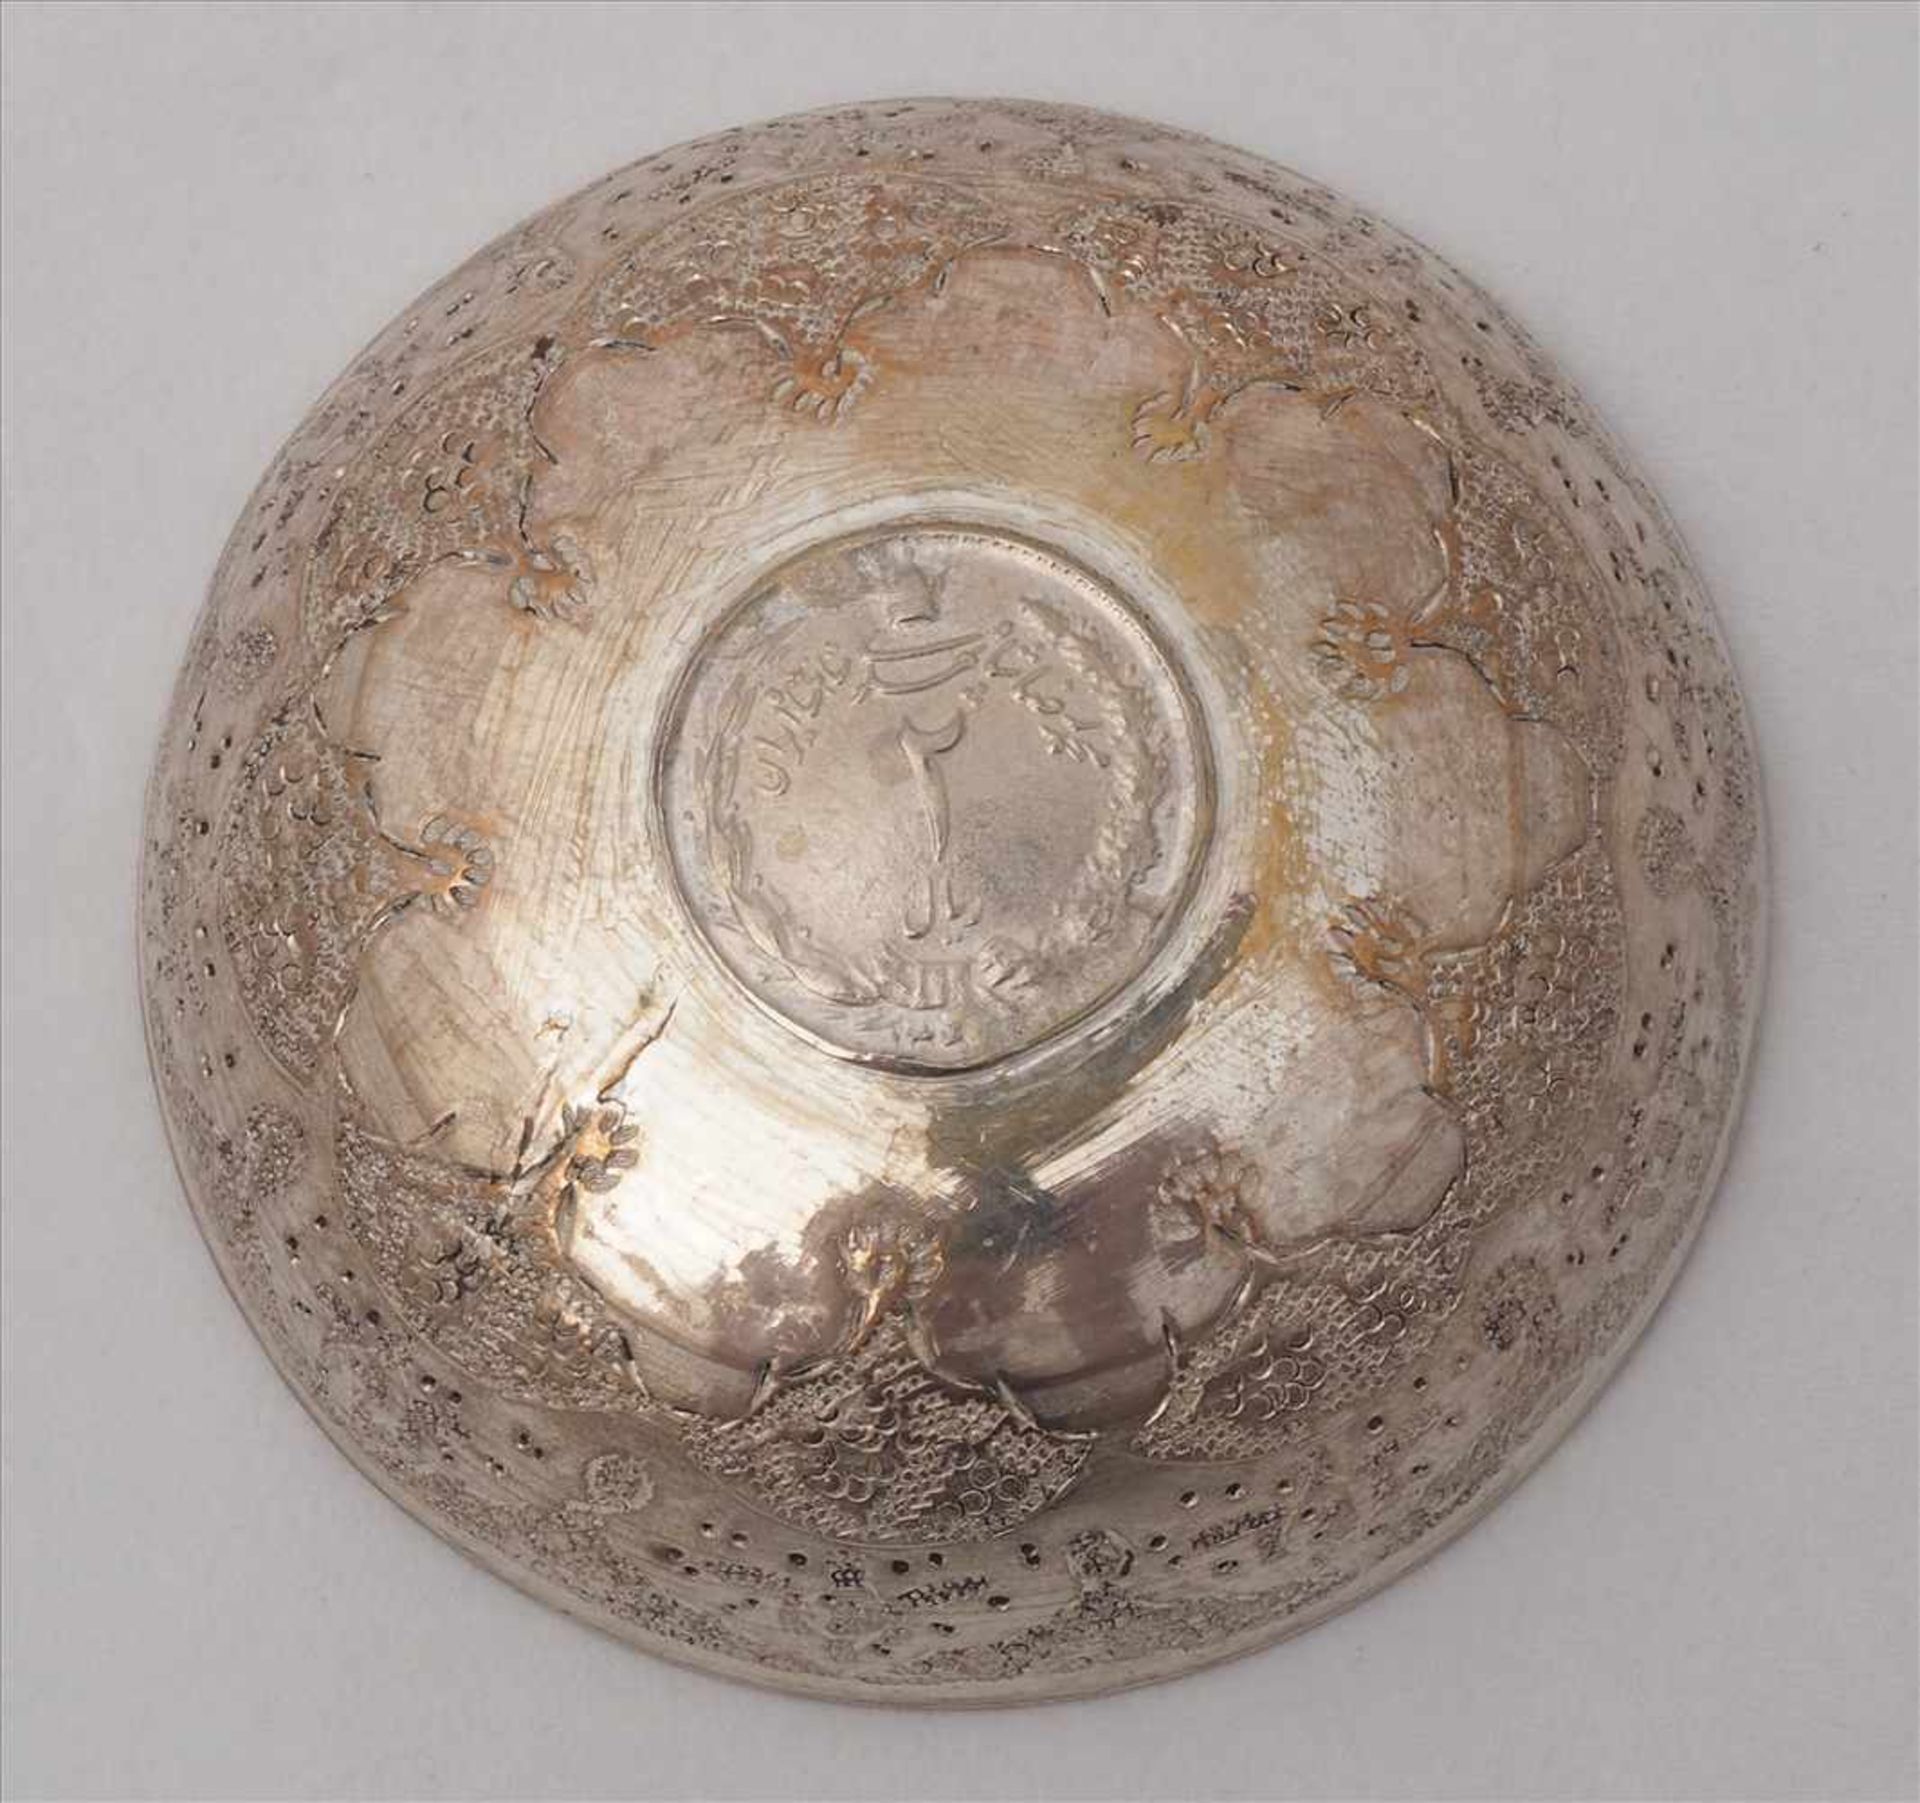 MünzschälchenNaher Osten 20. Jh. Silber, nicht punziert. Eingearbeitete Münze. Durchmesser ca. 6 cm, - Bild 3 aus 3